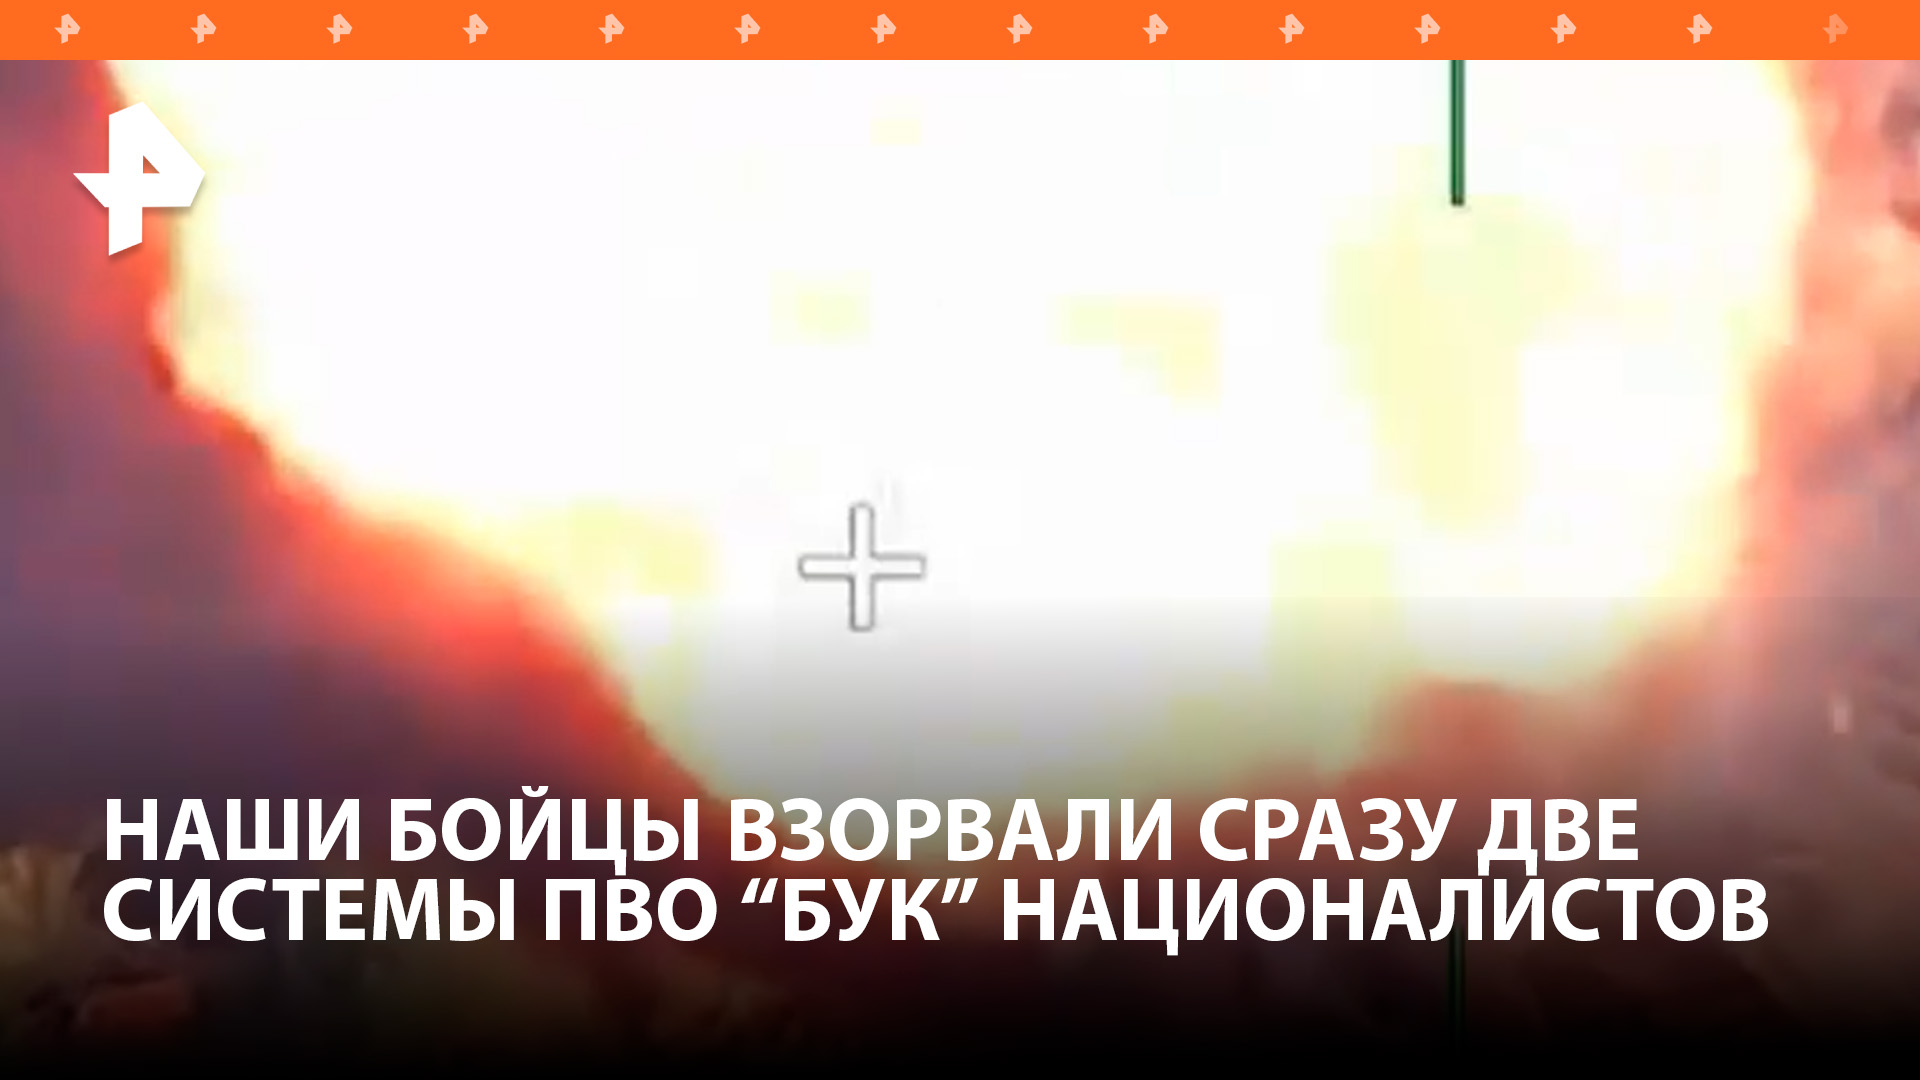 Военные ВС РФ уничтожили две украинские системы "Бук" с американскими ракетами / РЕН Новости